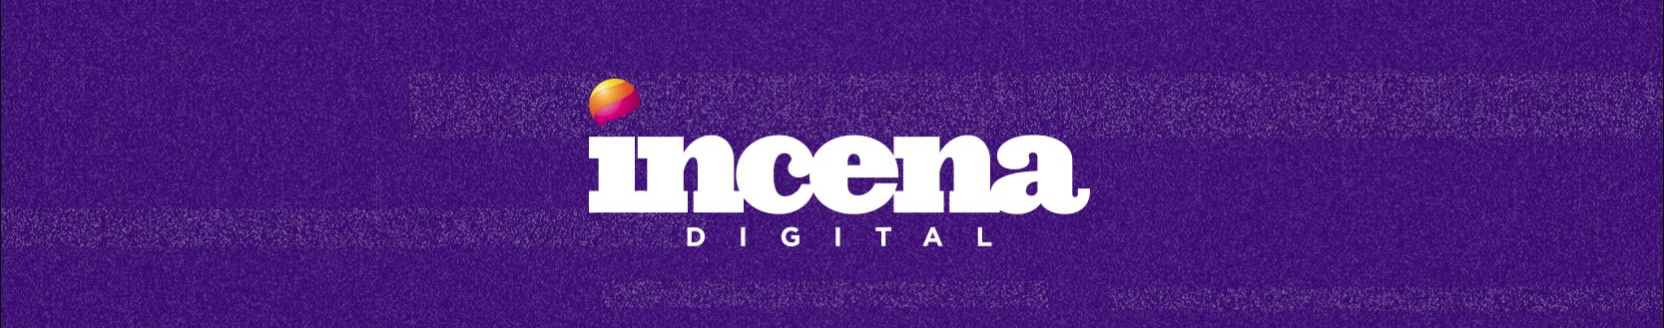 Incena Digital's profile banner